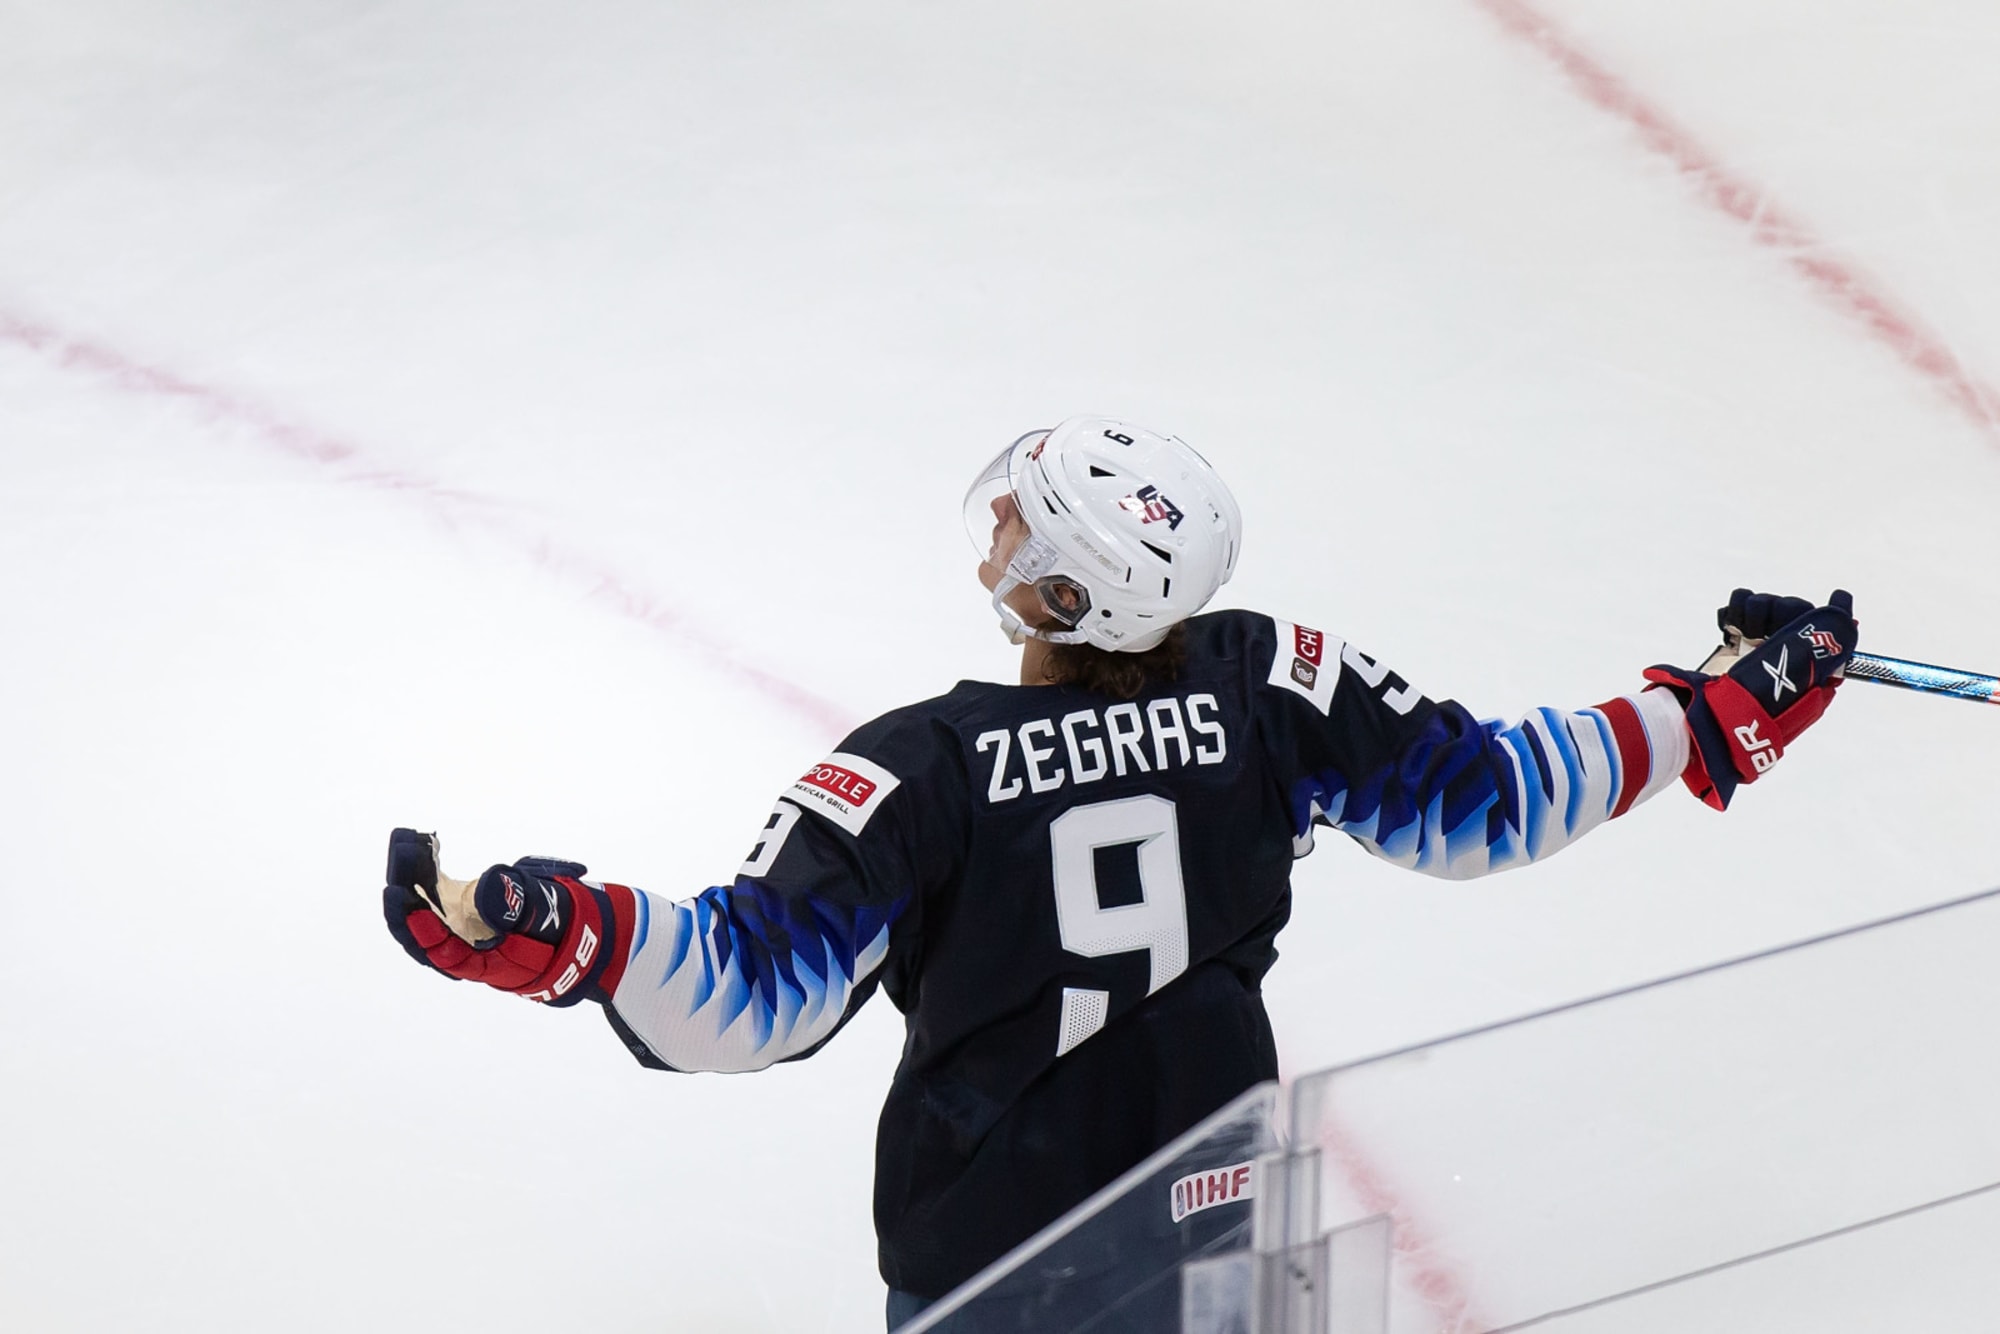 NHL News on X: Your 2021 #WorldJuniors MVP, Trevor Zegras! 🥇🇺🇸  #LetsGoDucks  / X